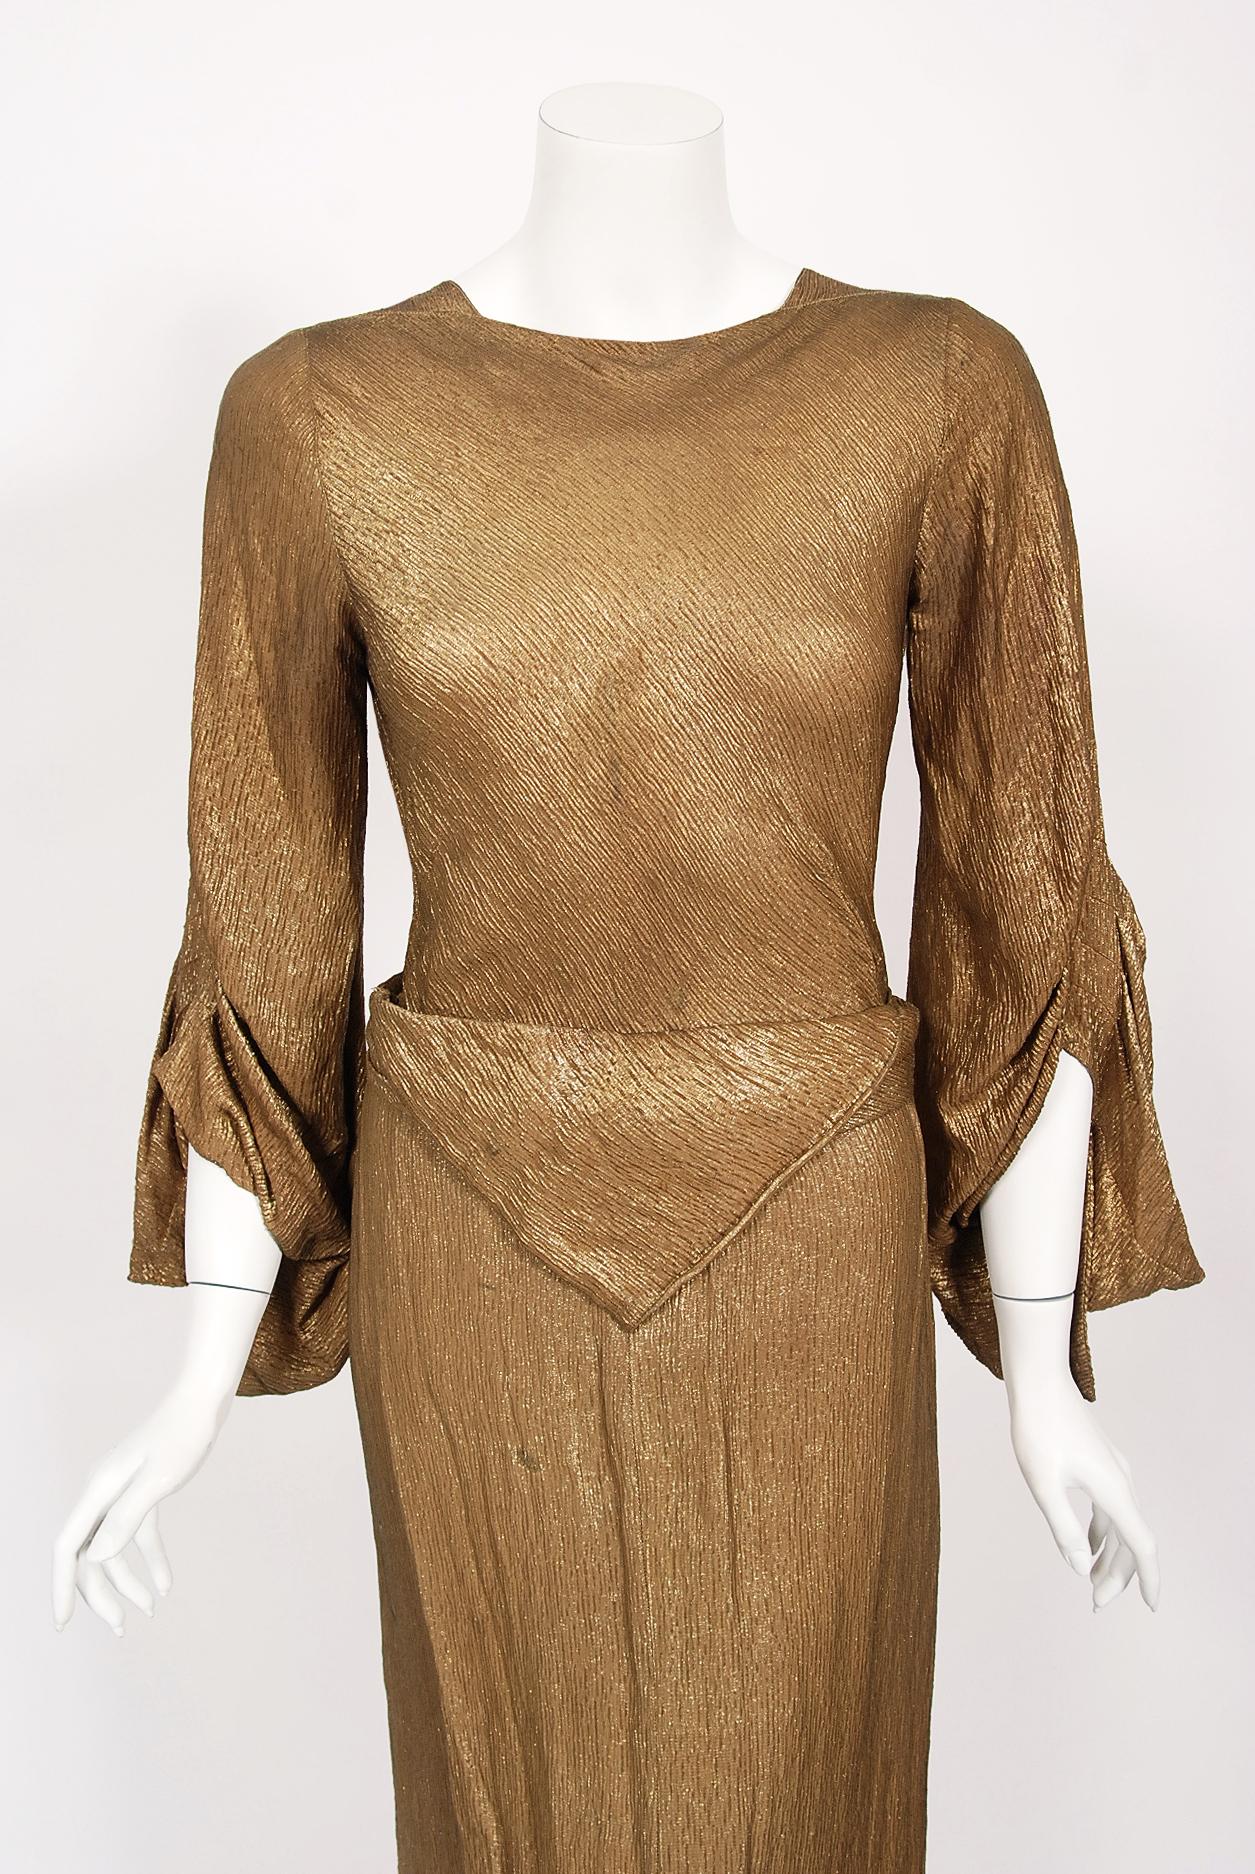 Ein wahrhaft atemberaubendes und luxuriöses, schräg geschnittenes Kleid aus dem Londoner Nobelkaufhaus Debenham & Freebody aus der Mitte der 1930er Jahre mit goldschimmerndem Lamé. Dieses besondere Kaufhaus wurde das erste von über 60 landesweit.